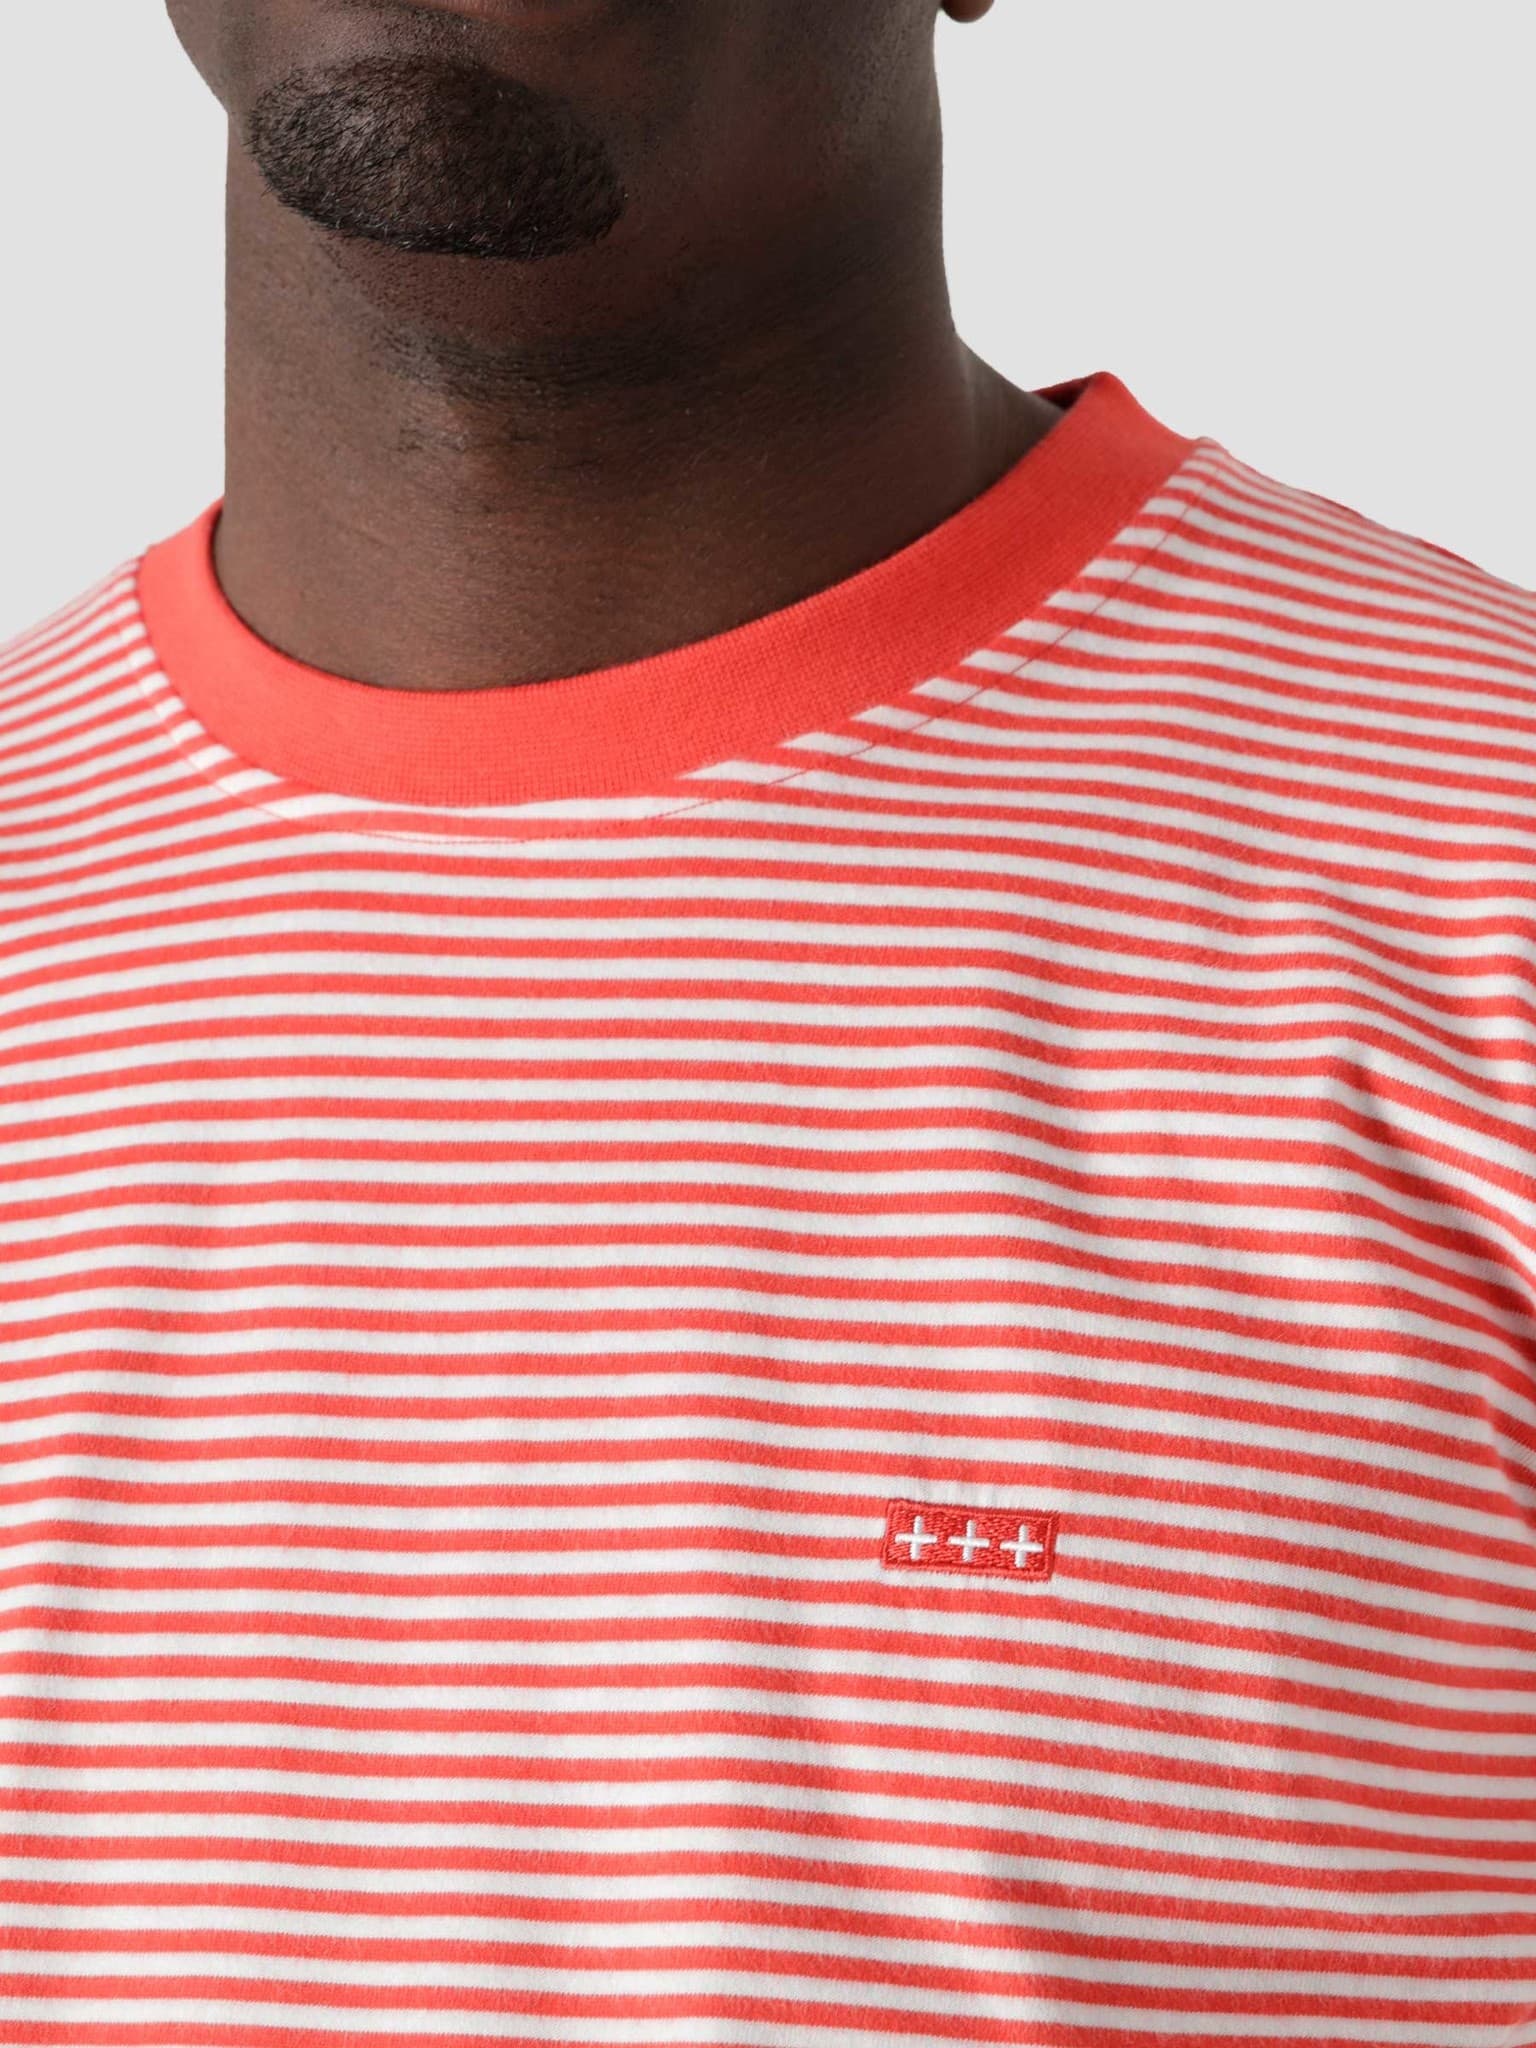 QB601 Stripe T-shirt Orange White